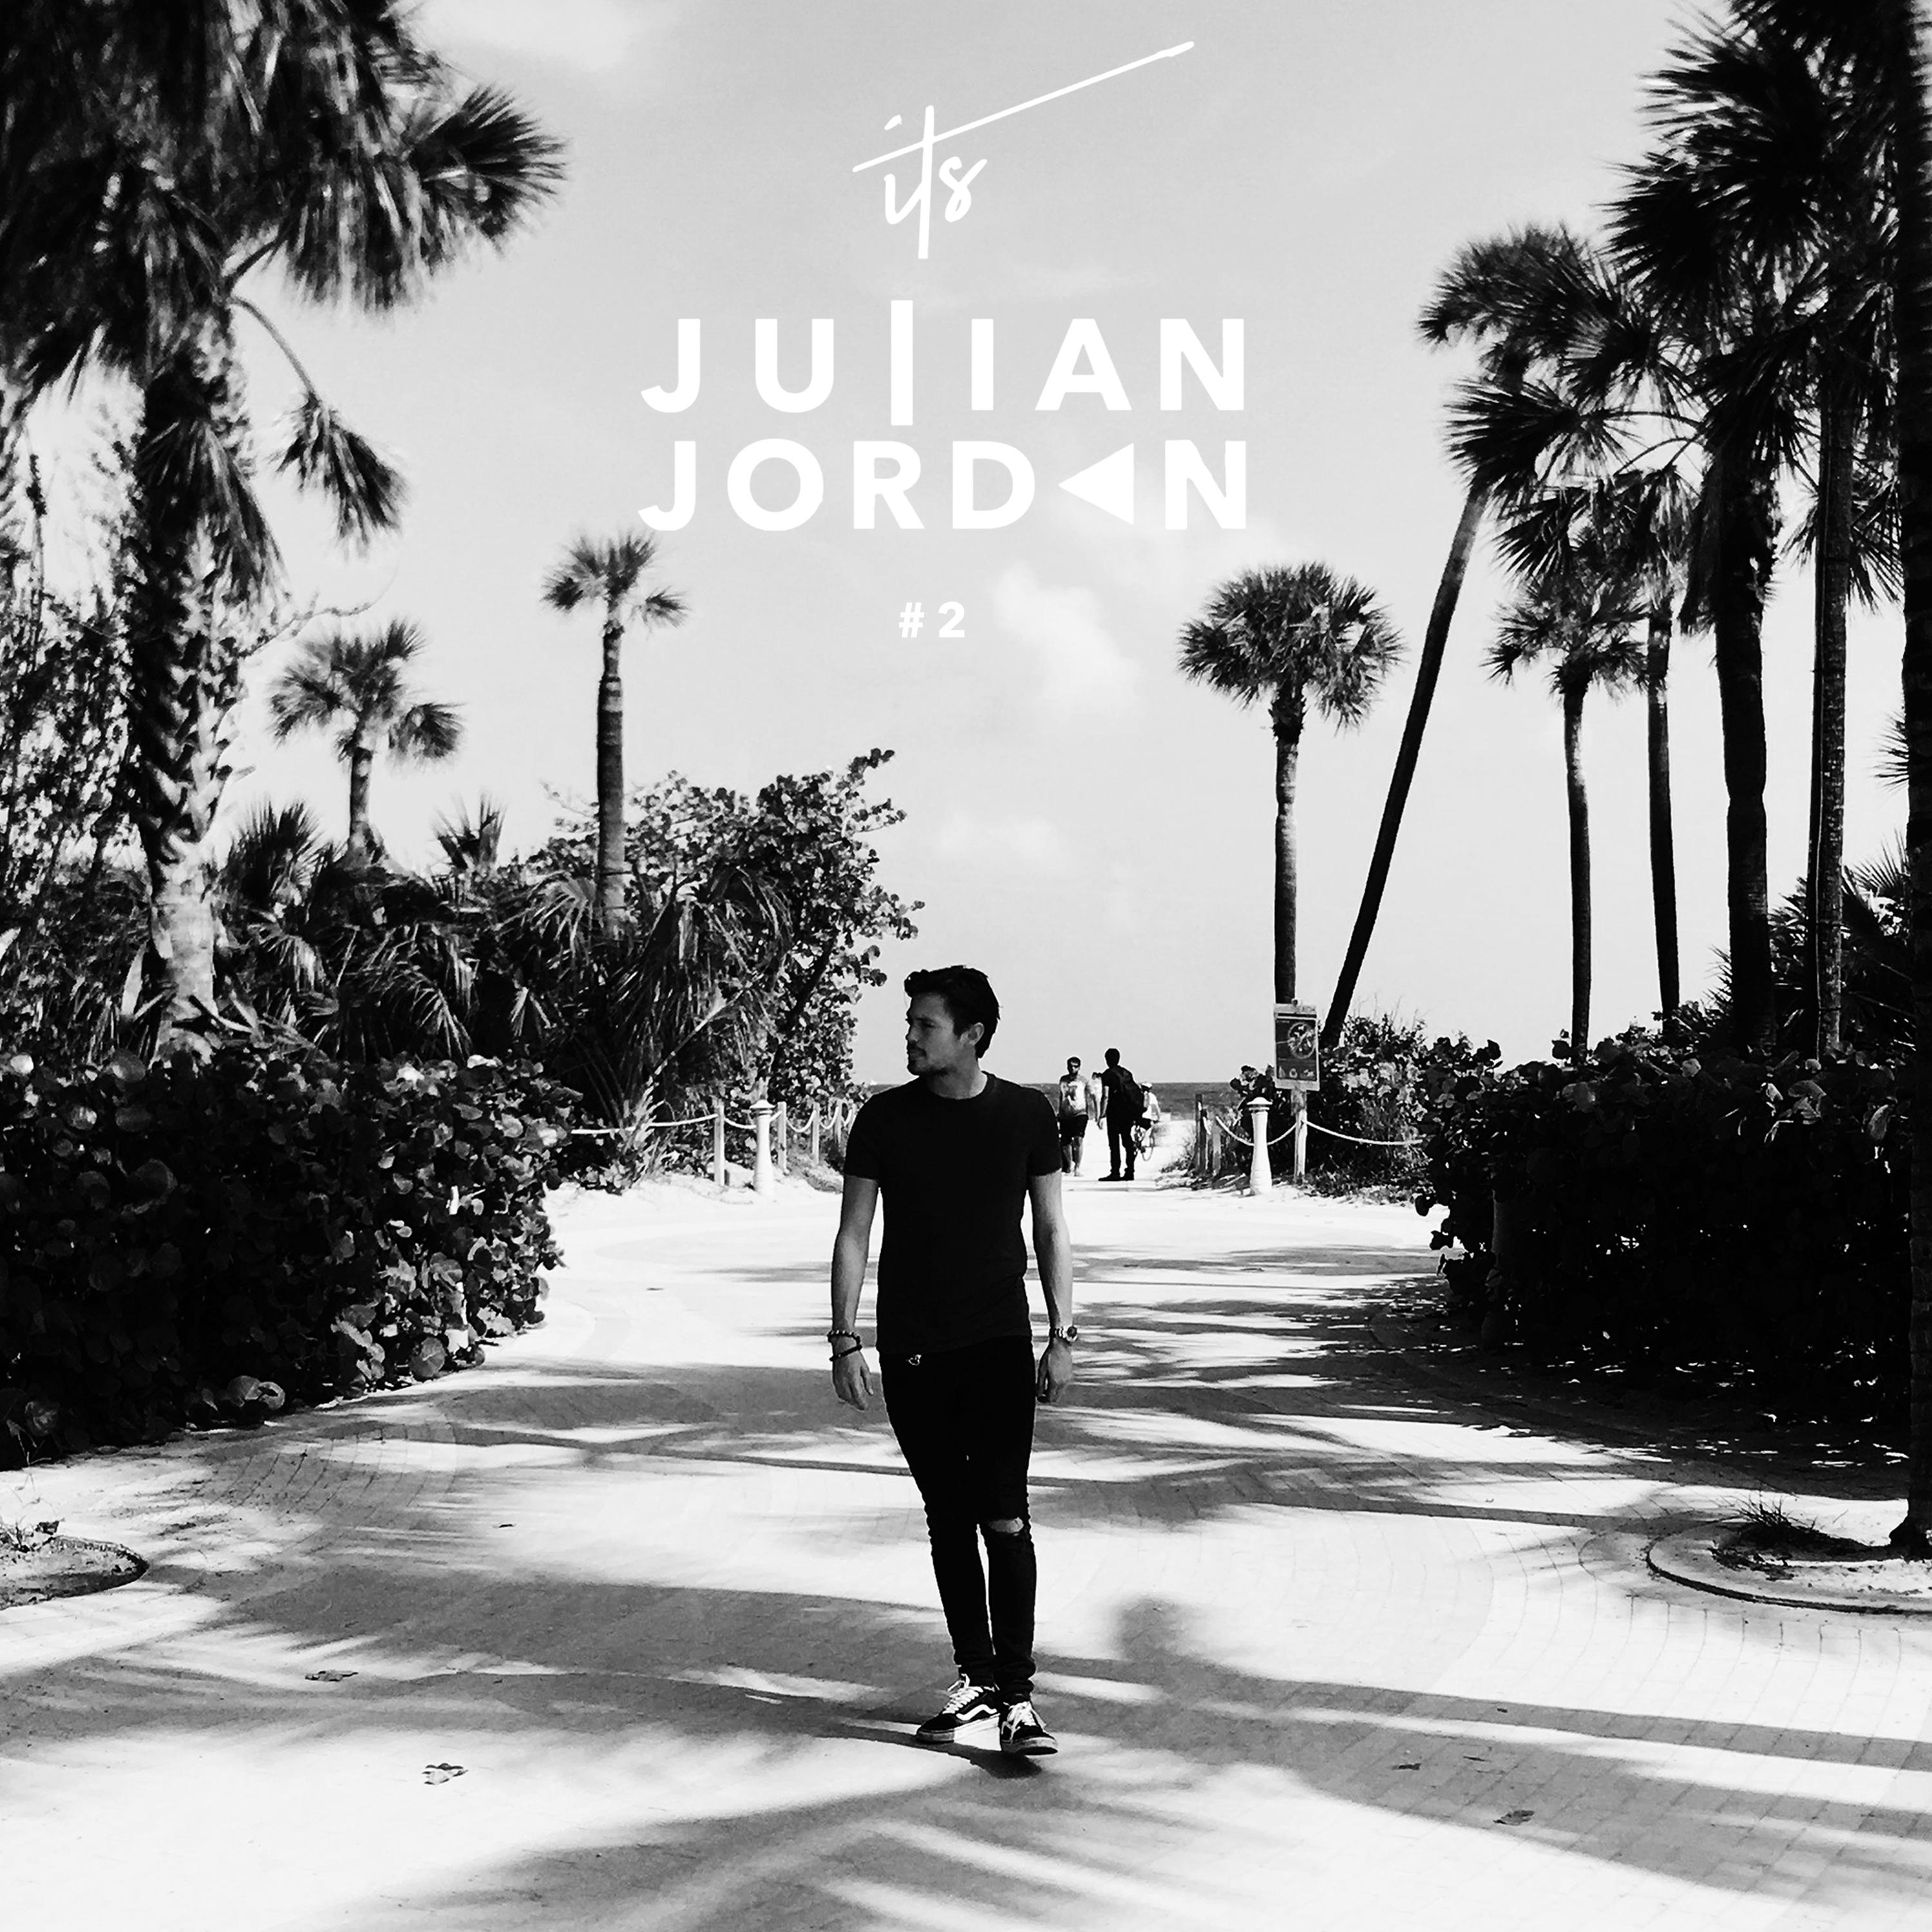 Julian Jordan - It's Julian Jordan #2 (Full Continuous Mix)